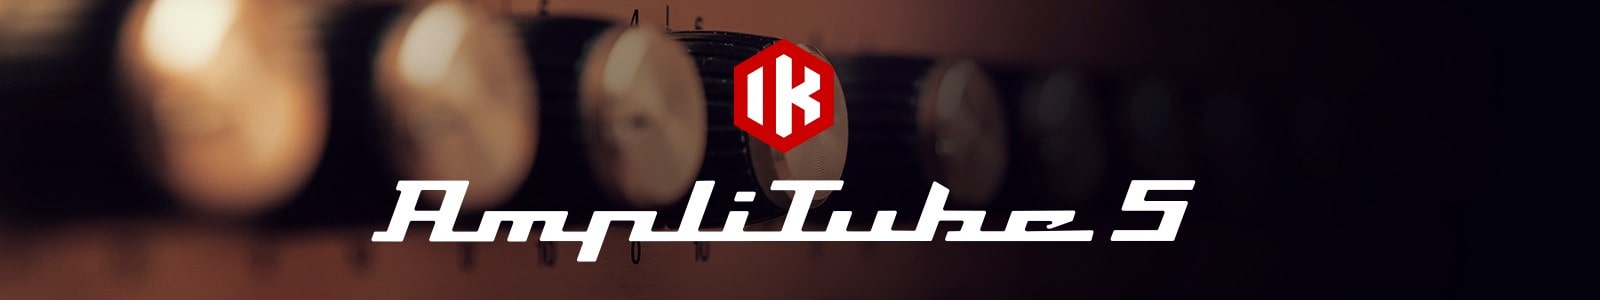 AmpliTube 5 by IK Multimedia